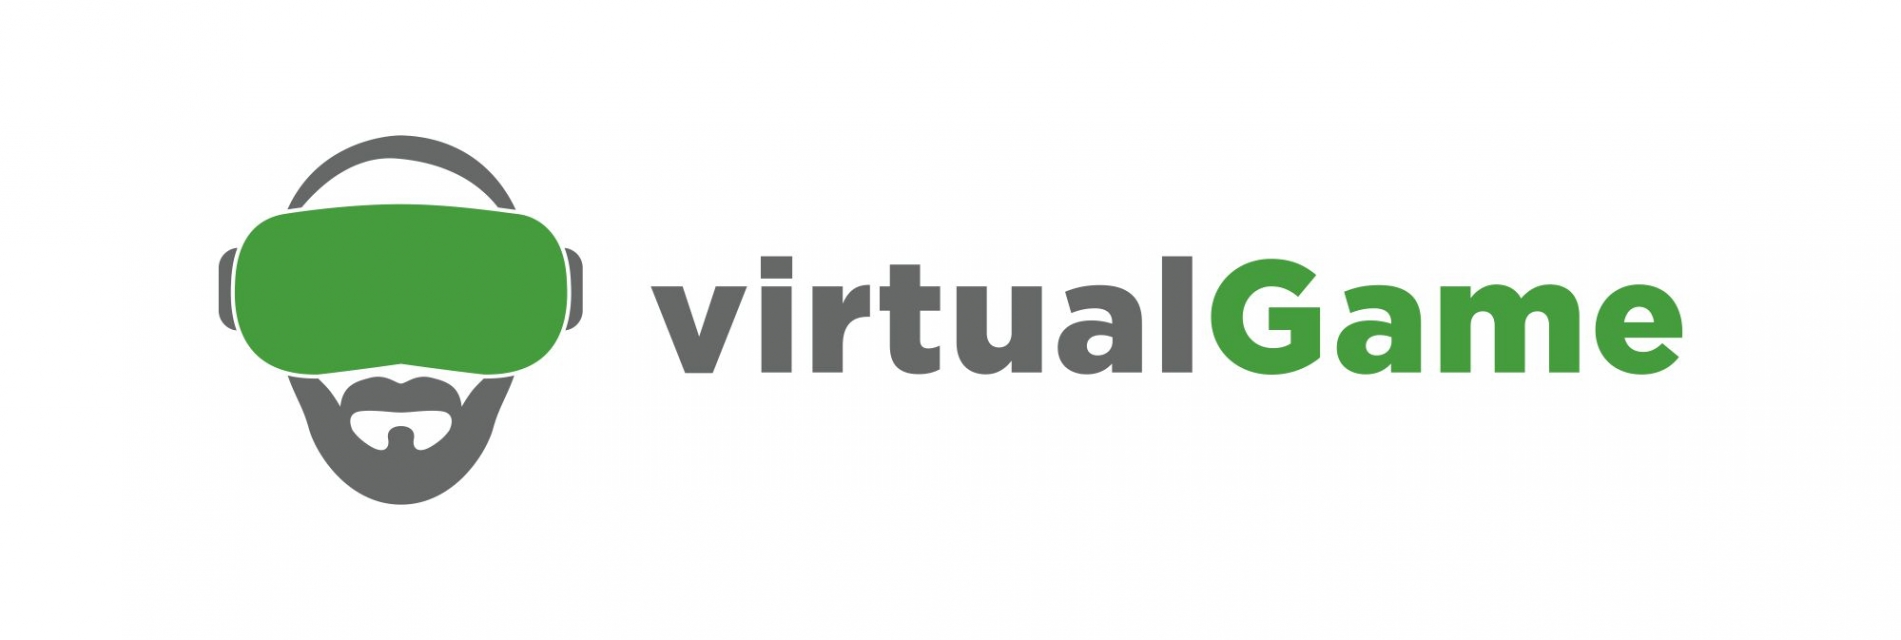 virtualGame